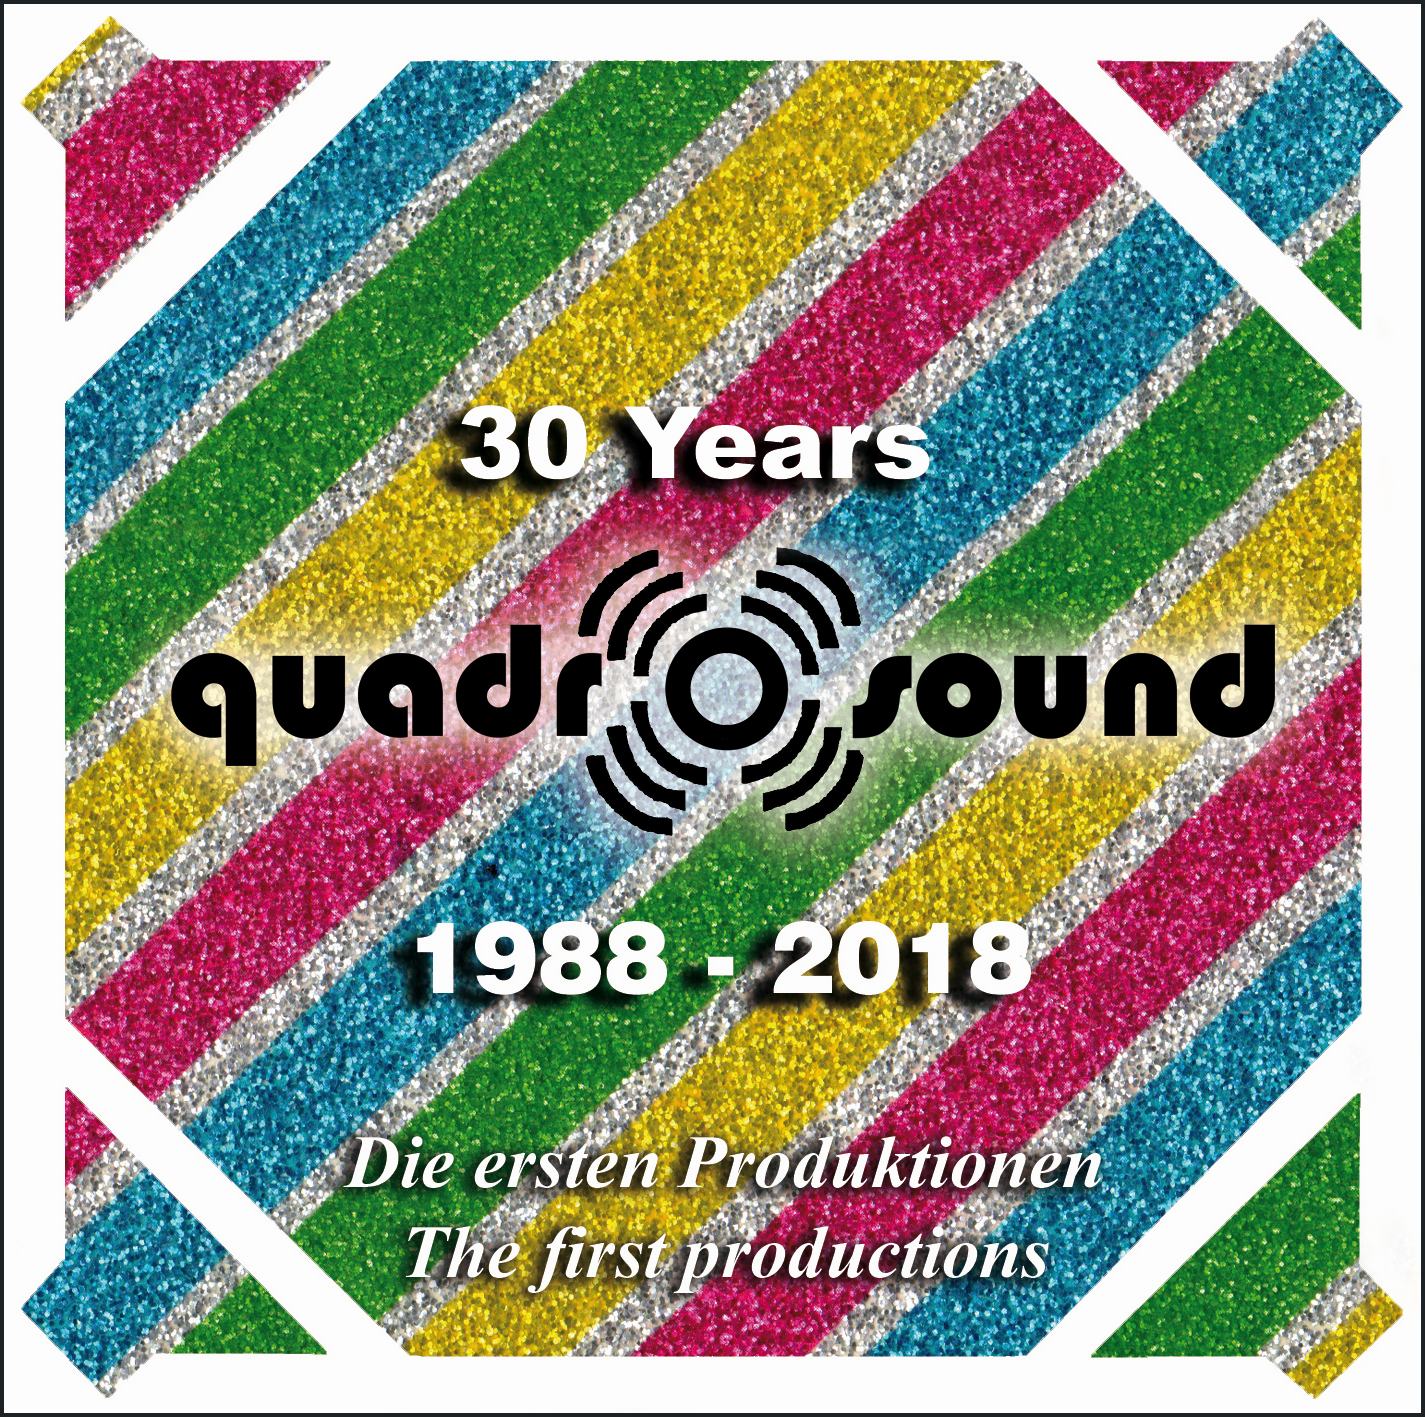 30 Years Quadro-Surround